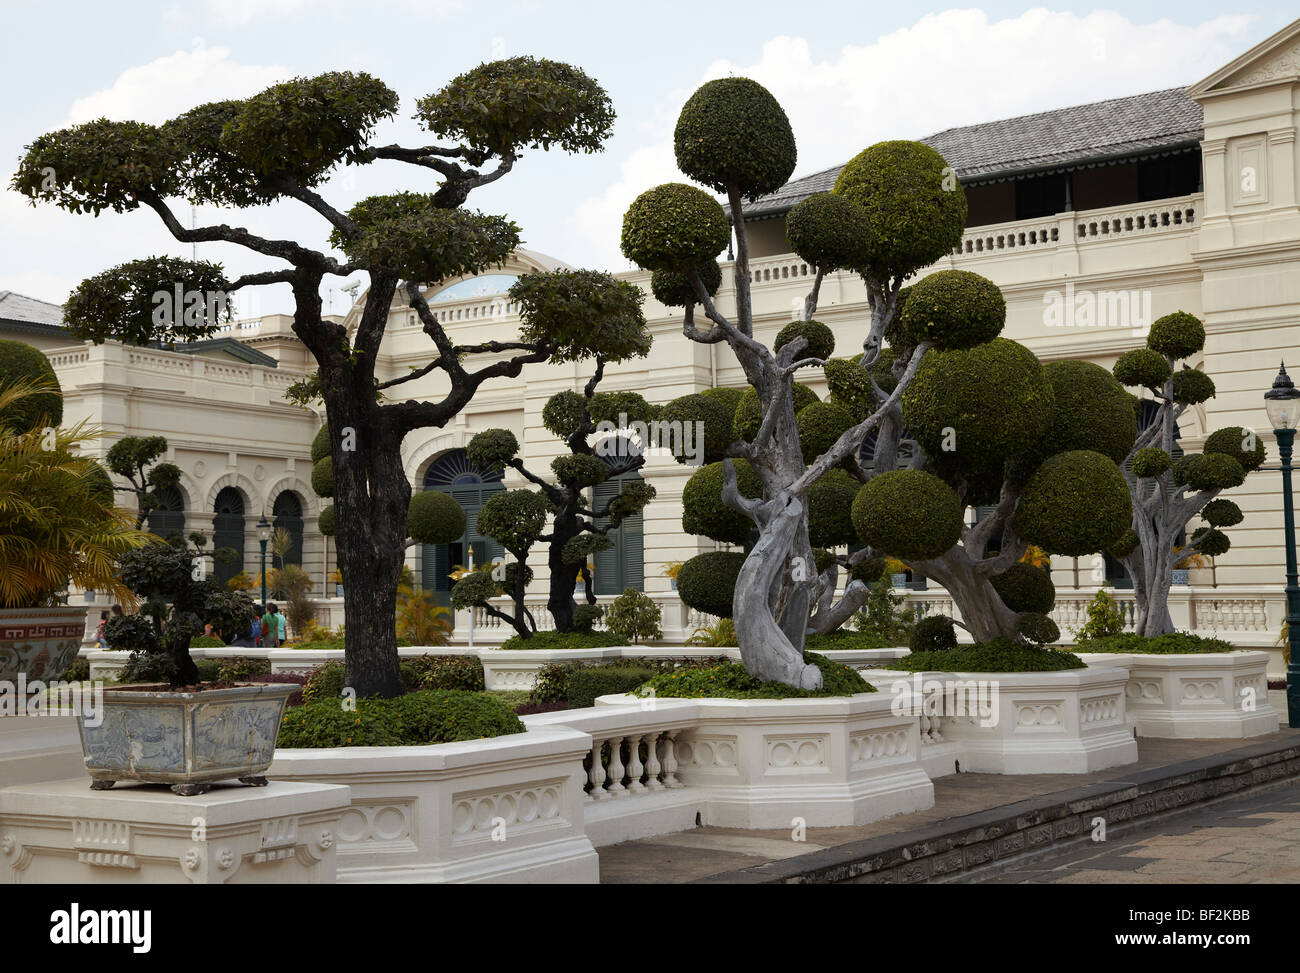 Ornamental trees (topiary) at the Grand Palace in Bangkok, Thailand Stock Photo